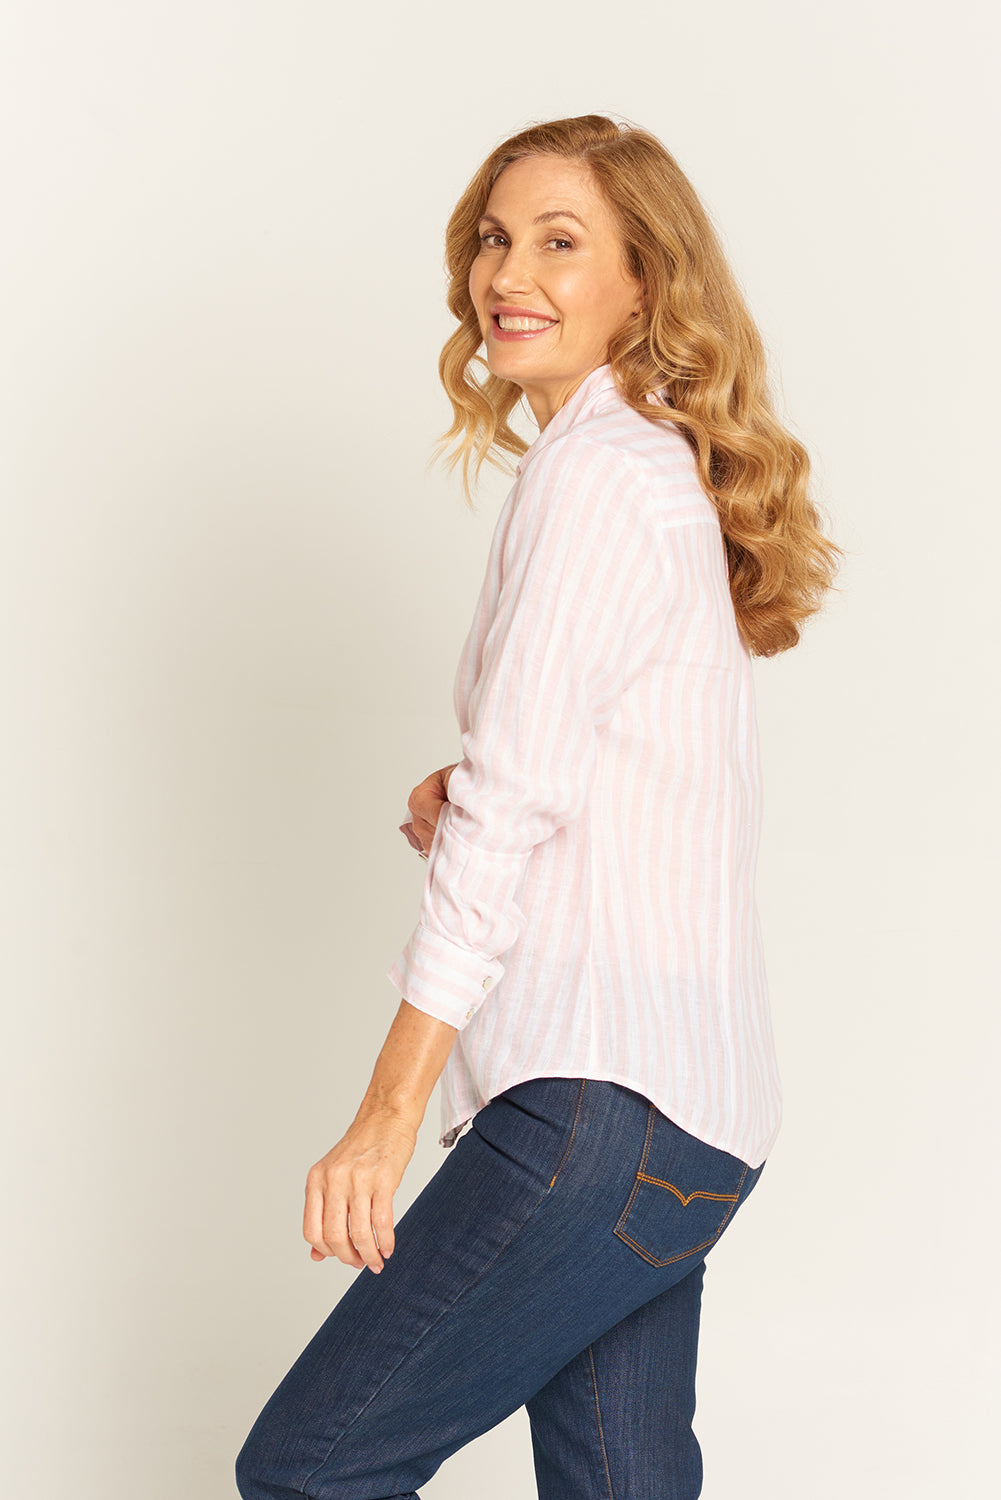 Goondiwindi Cotton Stripe Classic Fit Shirt 4279-99-W23